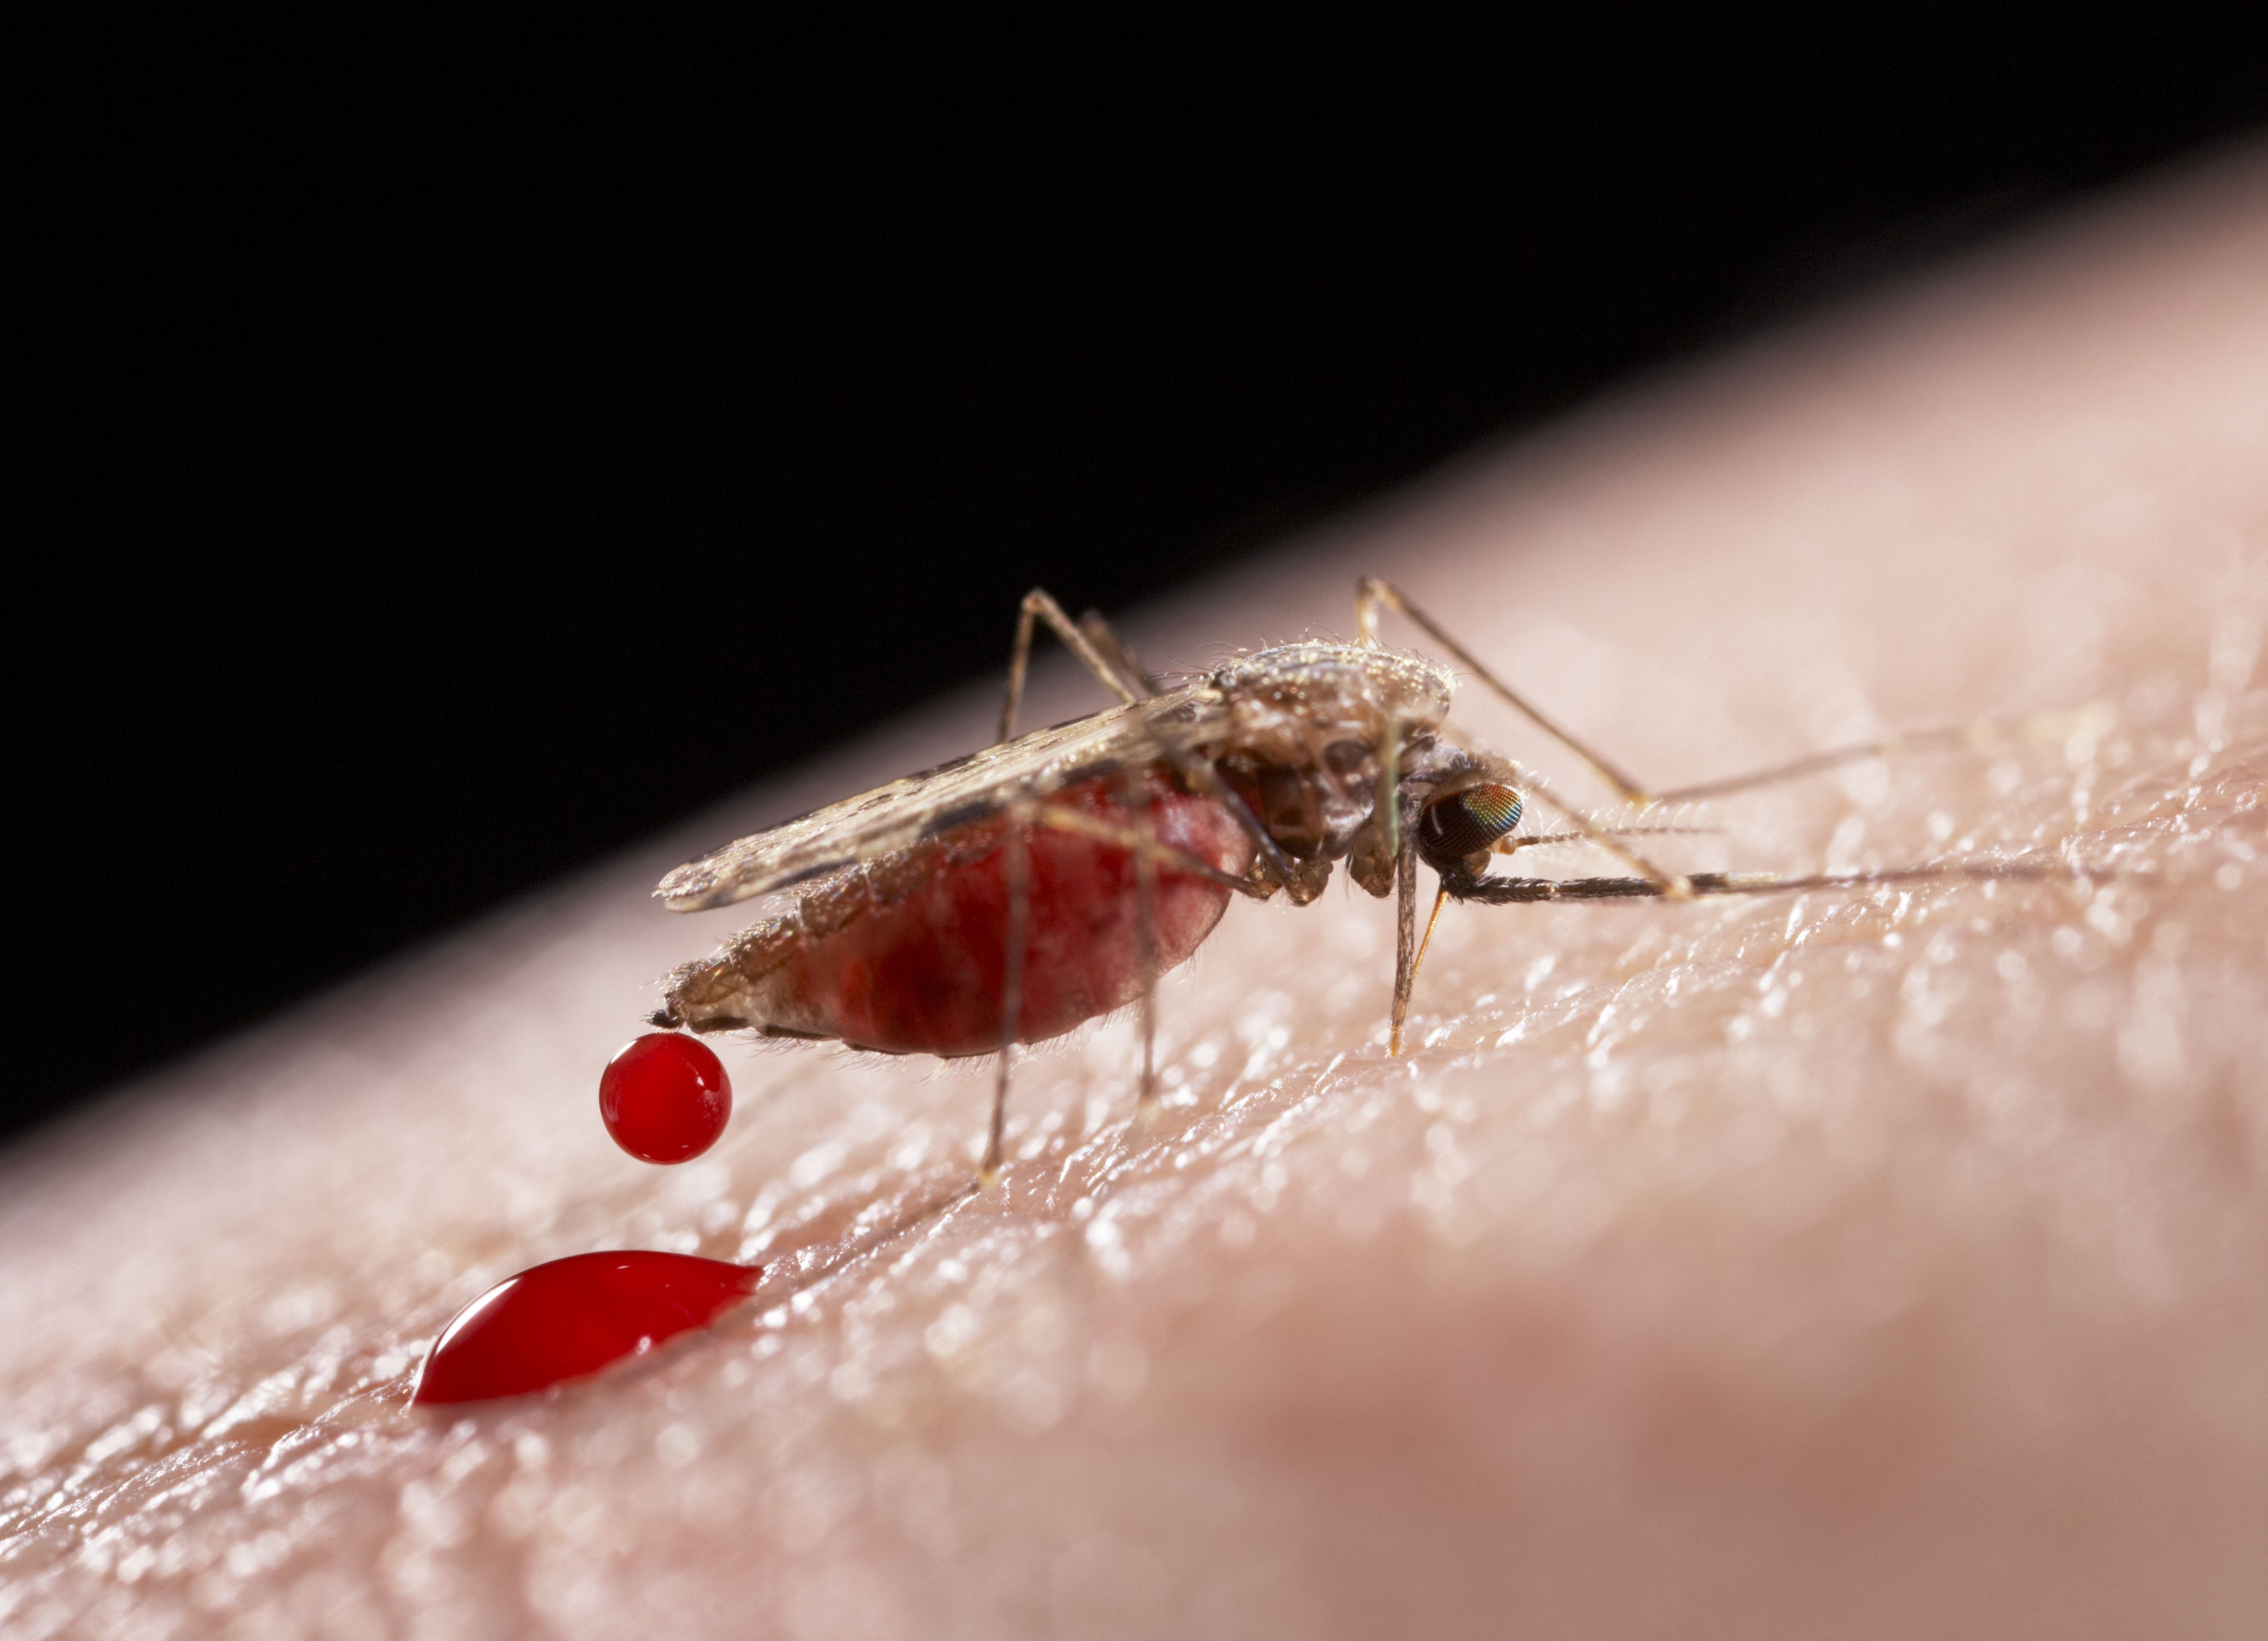 После малярии. Малярийный плазмодий комар. Укус малярии малярийный комар. Малярийный комар симптомы.